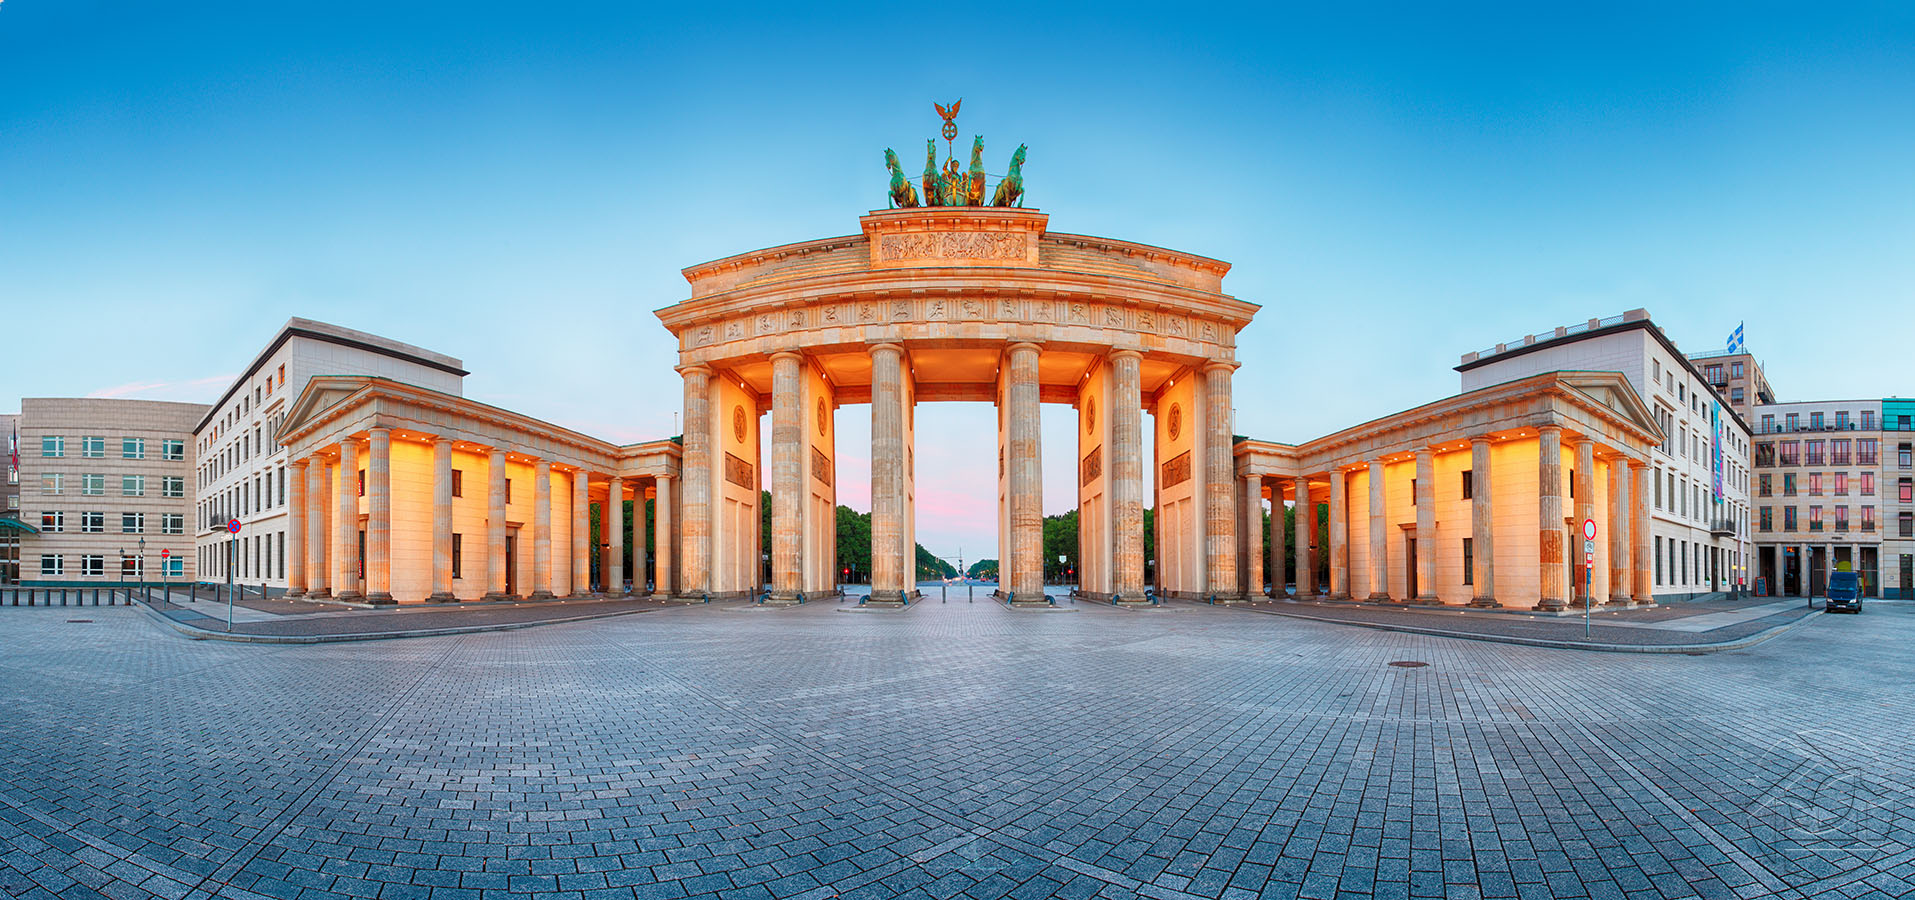 Архитектурный памятник в центре Берлина